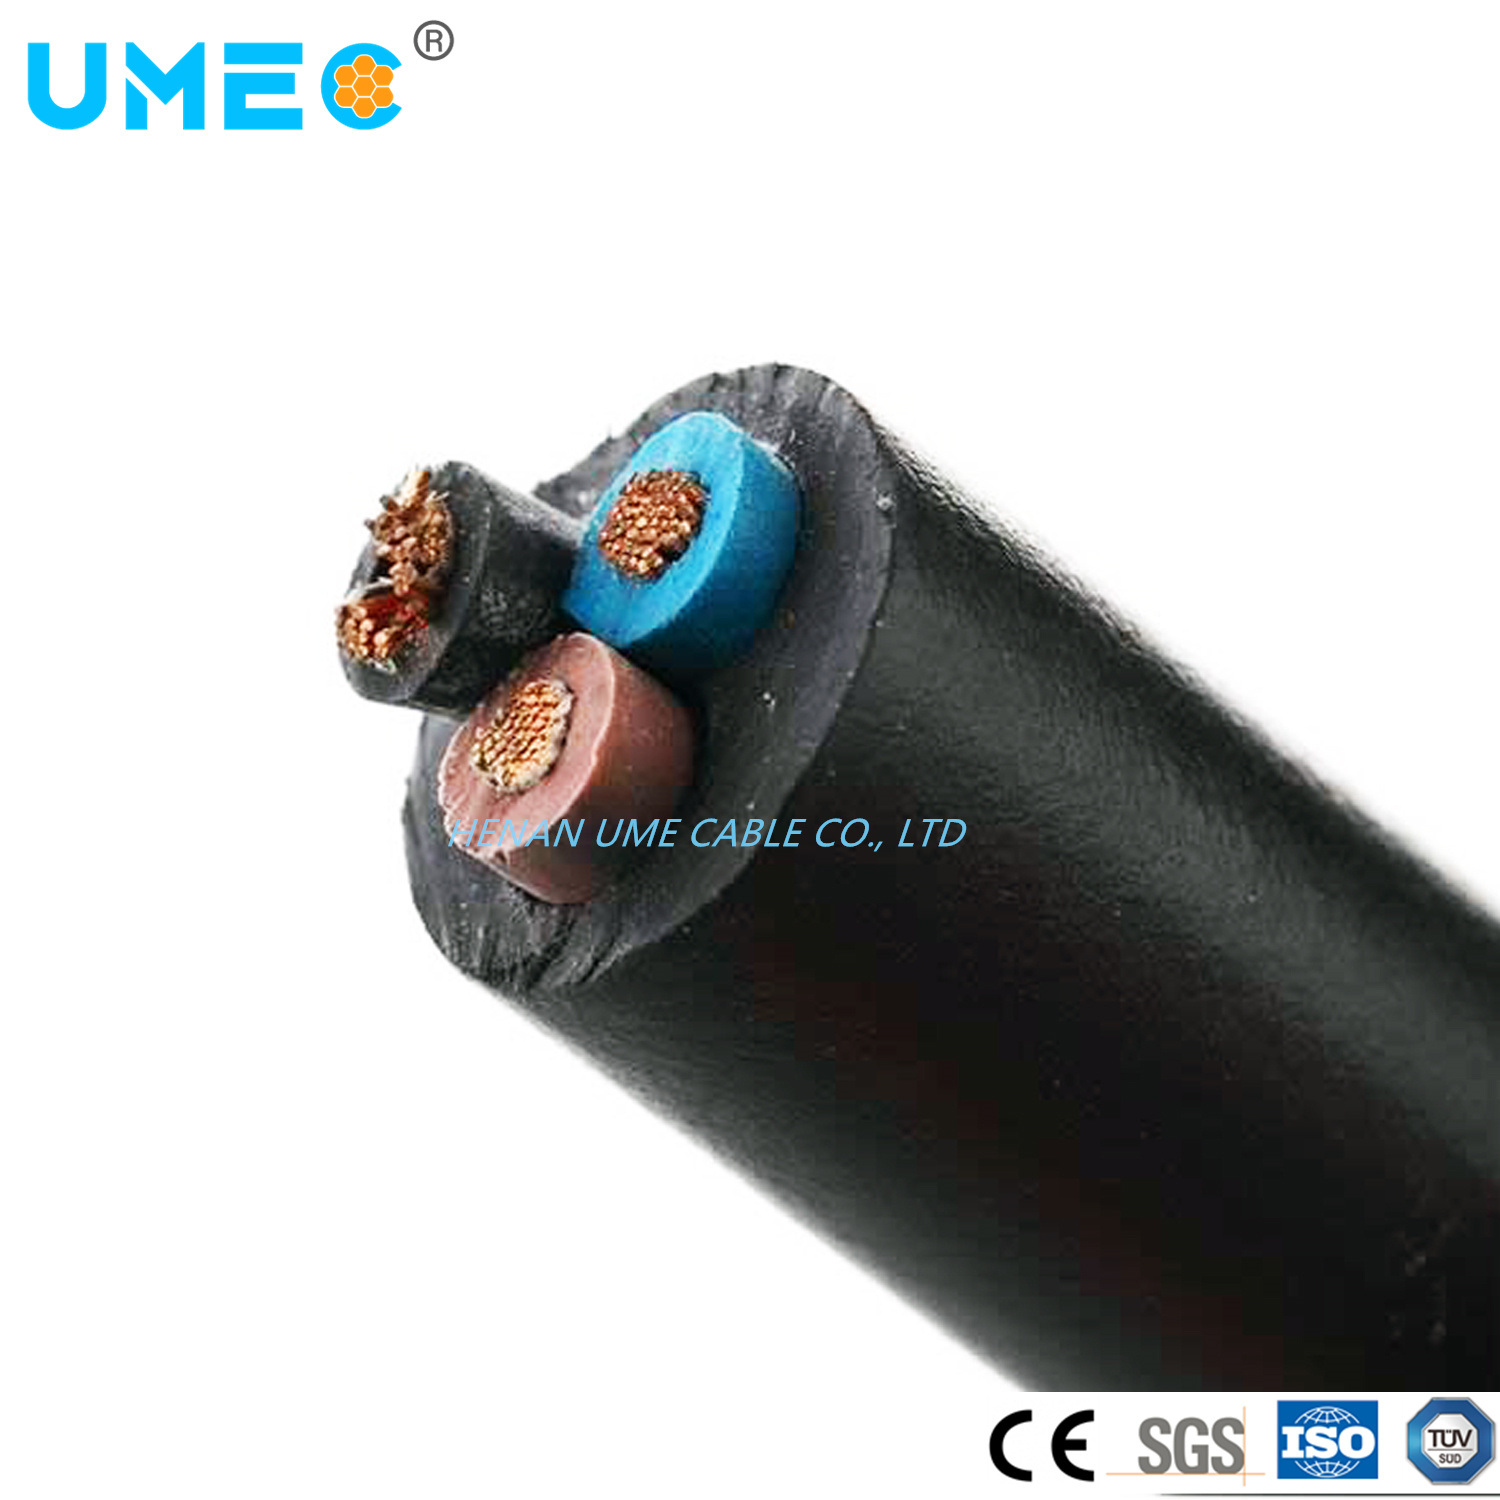 
                Câble électrique de la Chine Fabricant prix d′usine Ume général de la marque en caoutchouc souple câble en caoutchouc du câble sous gaine de câble électrique
            